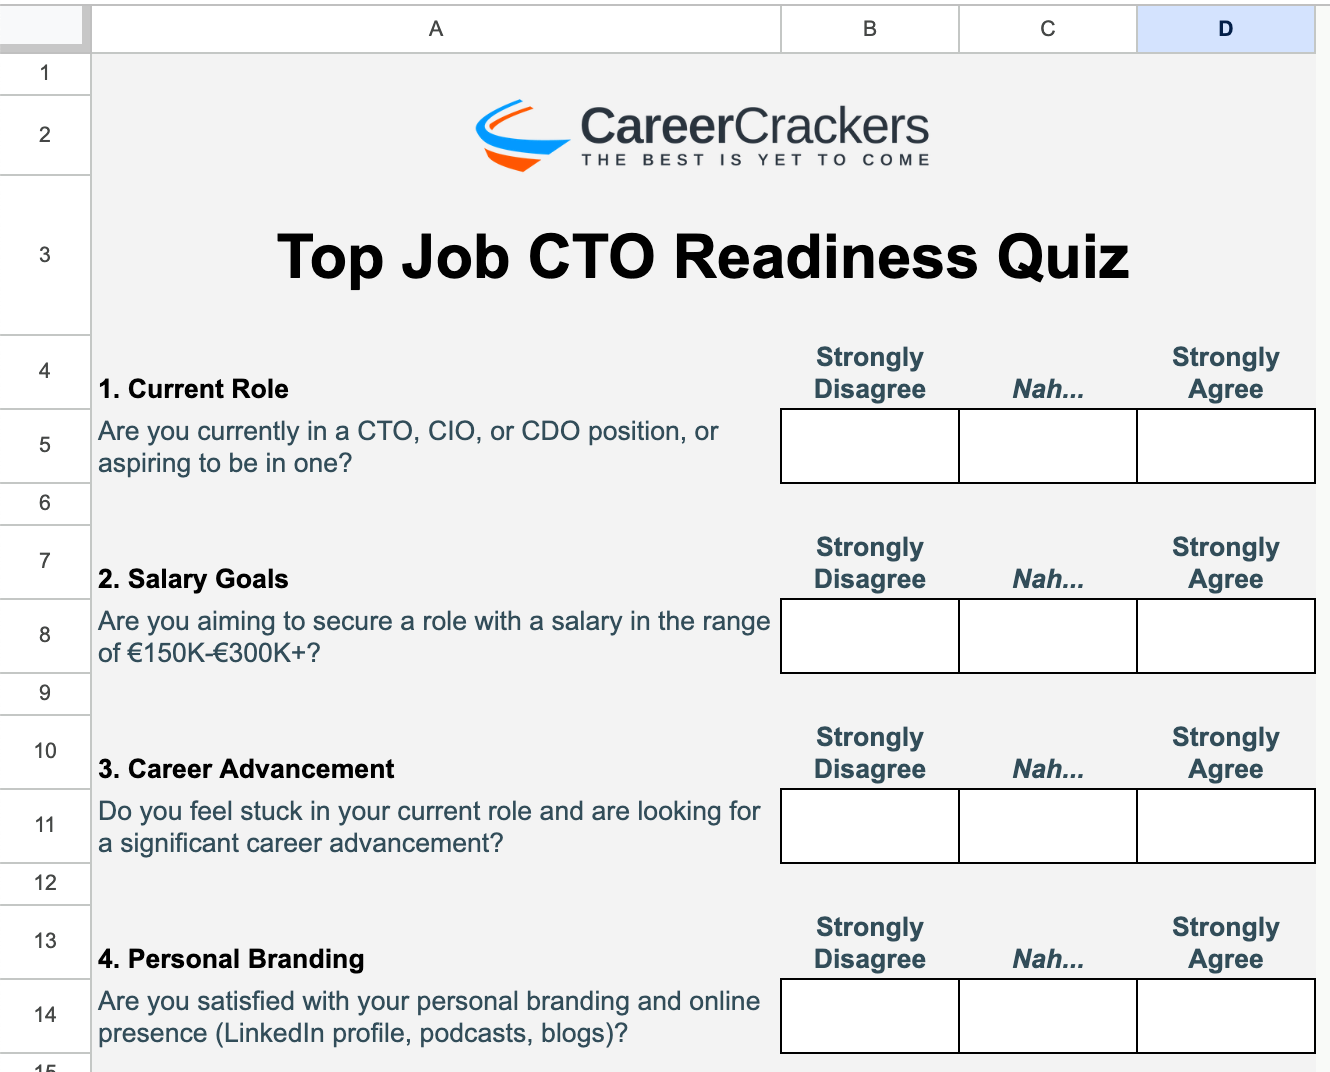 Top Job CTO Readiness Quiz Screenshot